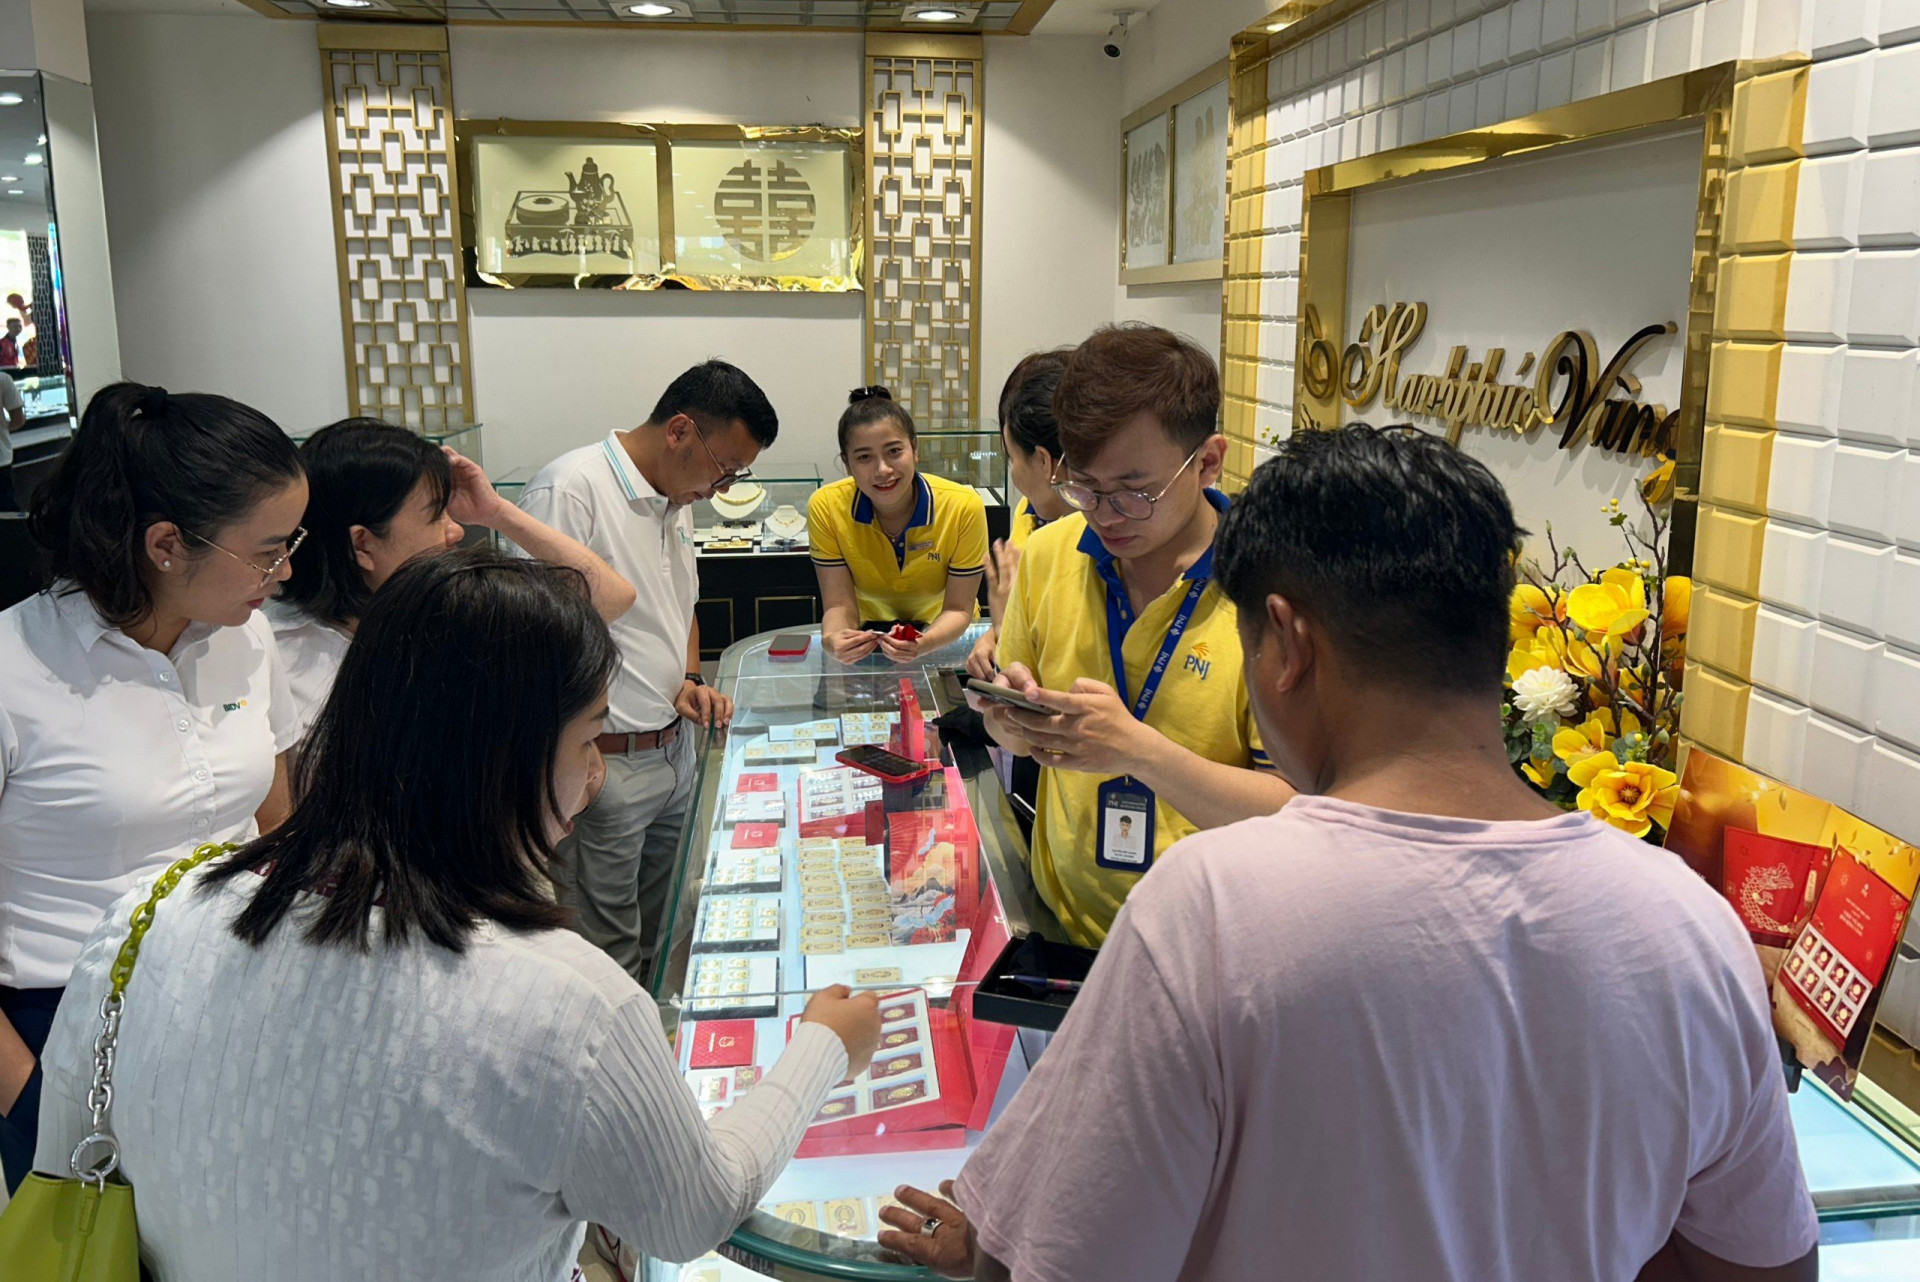 Đông đảo người dân lựa chọn vàng và trang sức tại cửa hàng PNJ Center Lý Thánh Tôn tại số 25 - 27 Lý Thánh Tôn, Phường Lộc Thọ, TP. Nha Trang.